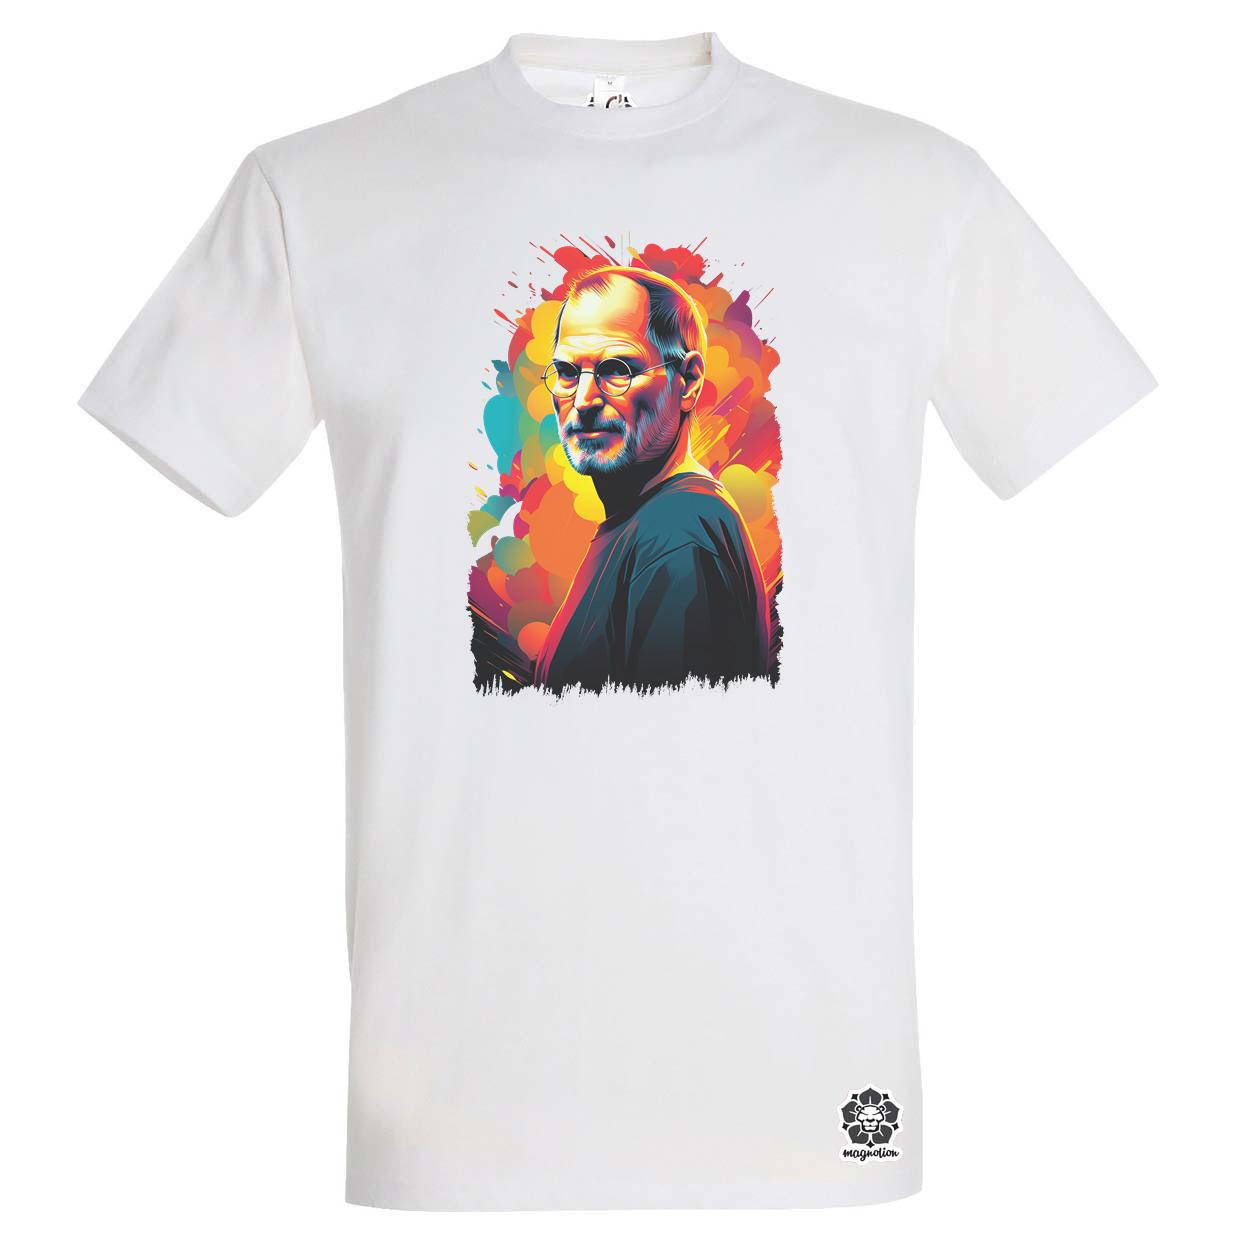 Pop art Steve Jobs v3